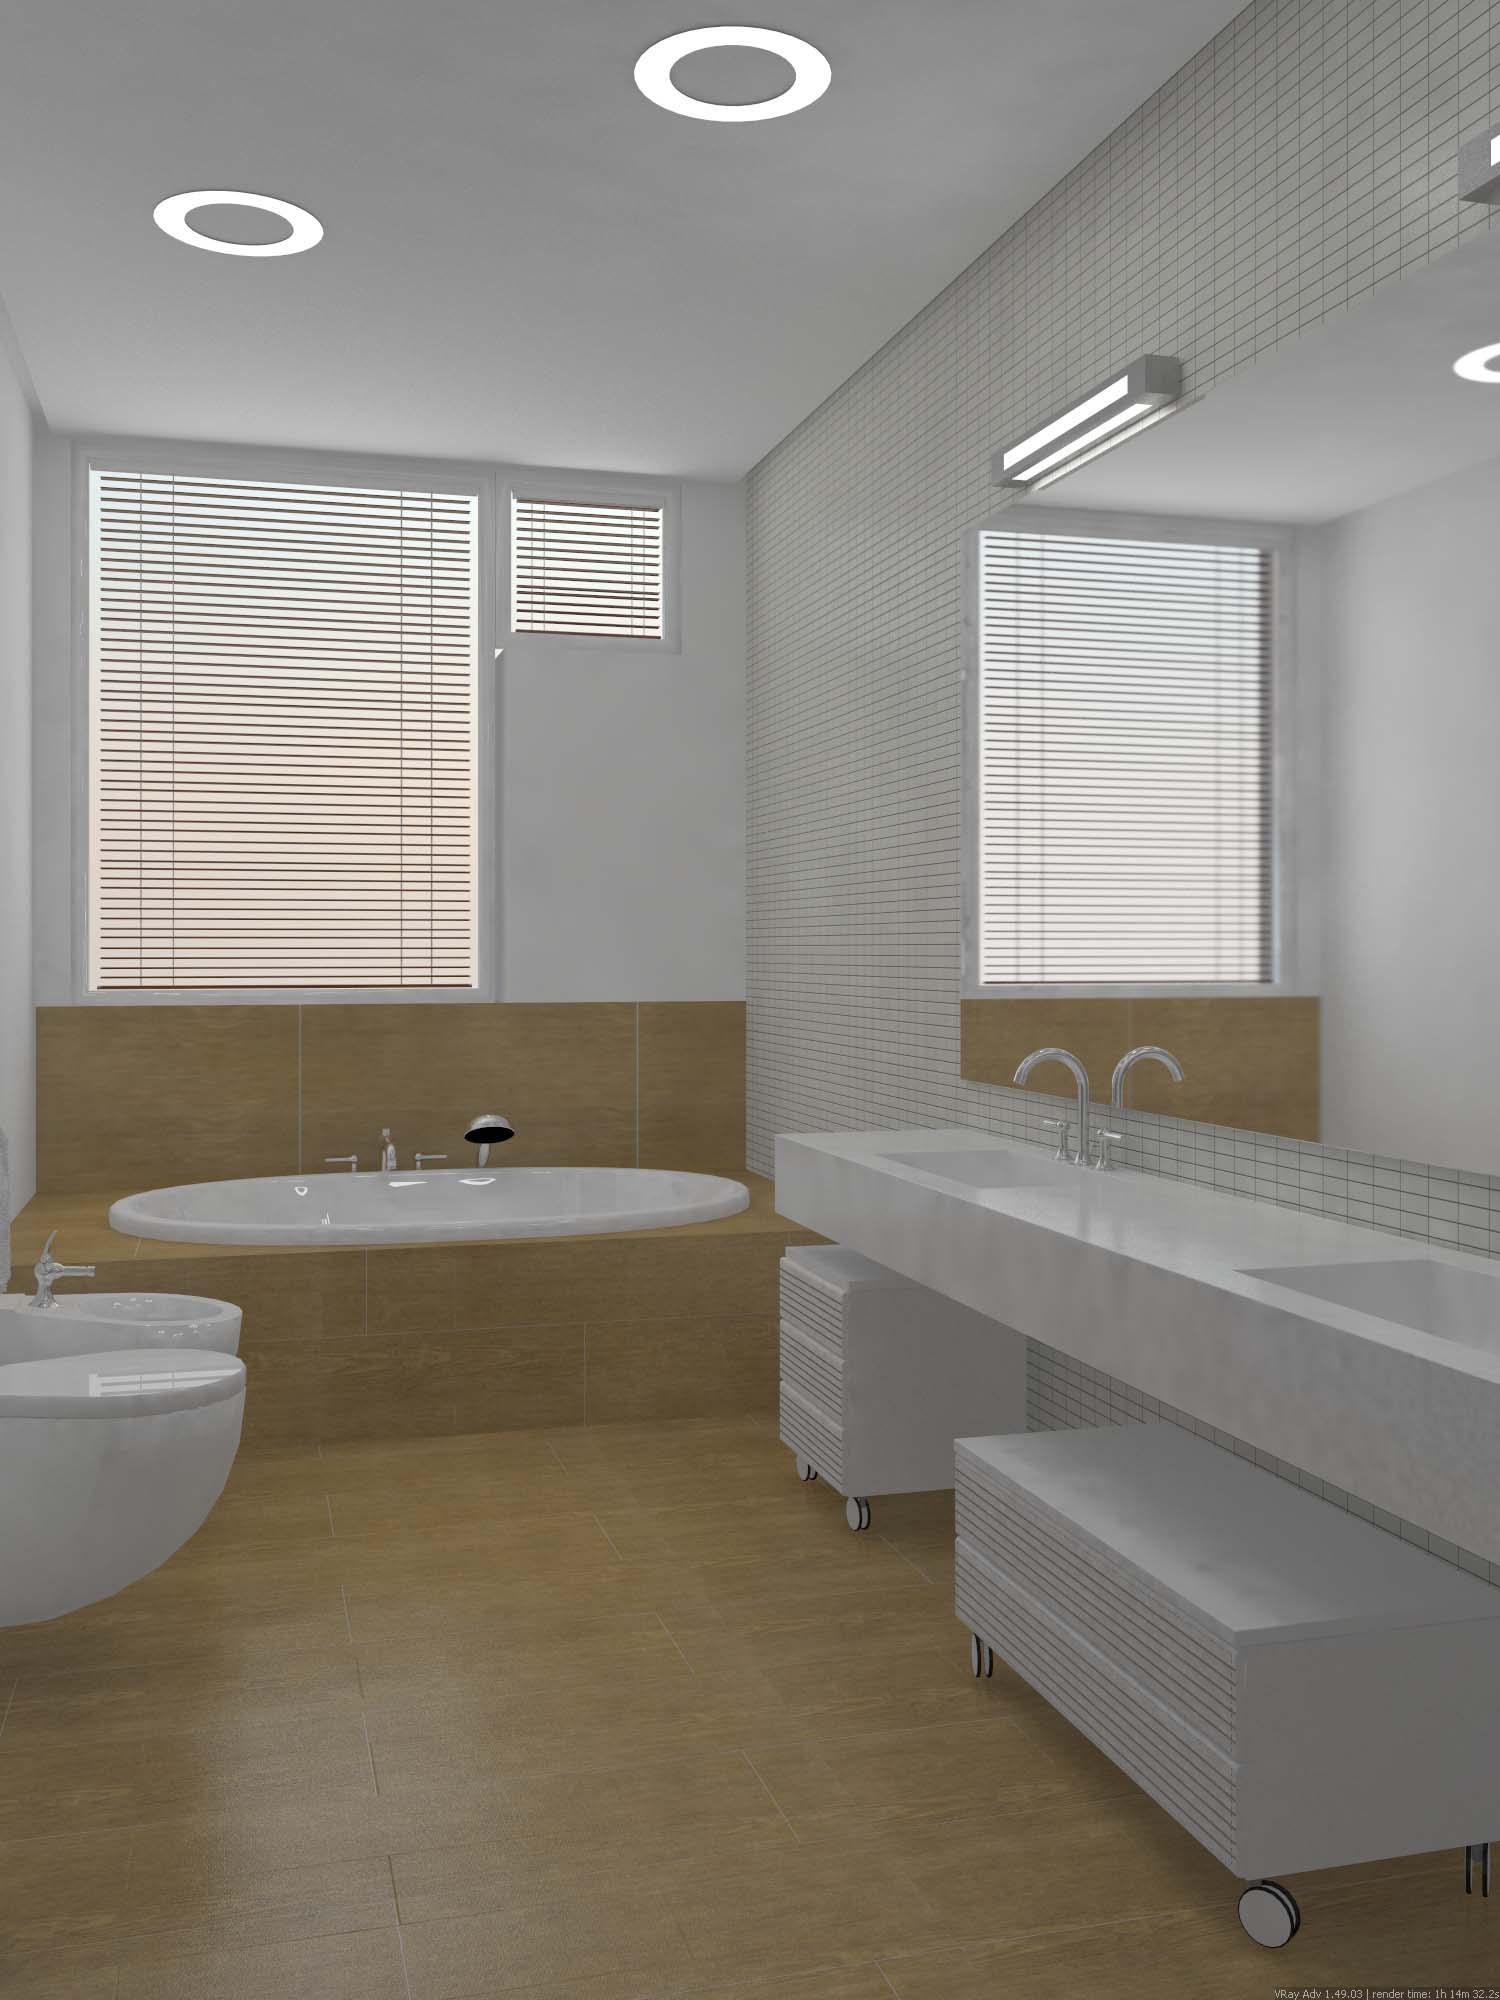 Интерьер ванной с жалюзи, подсветкой настенной и подсветкой светодиодной